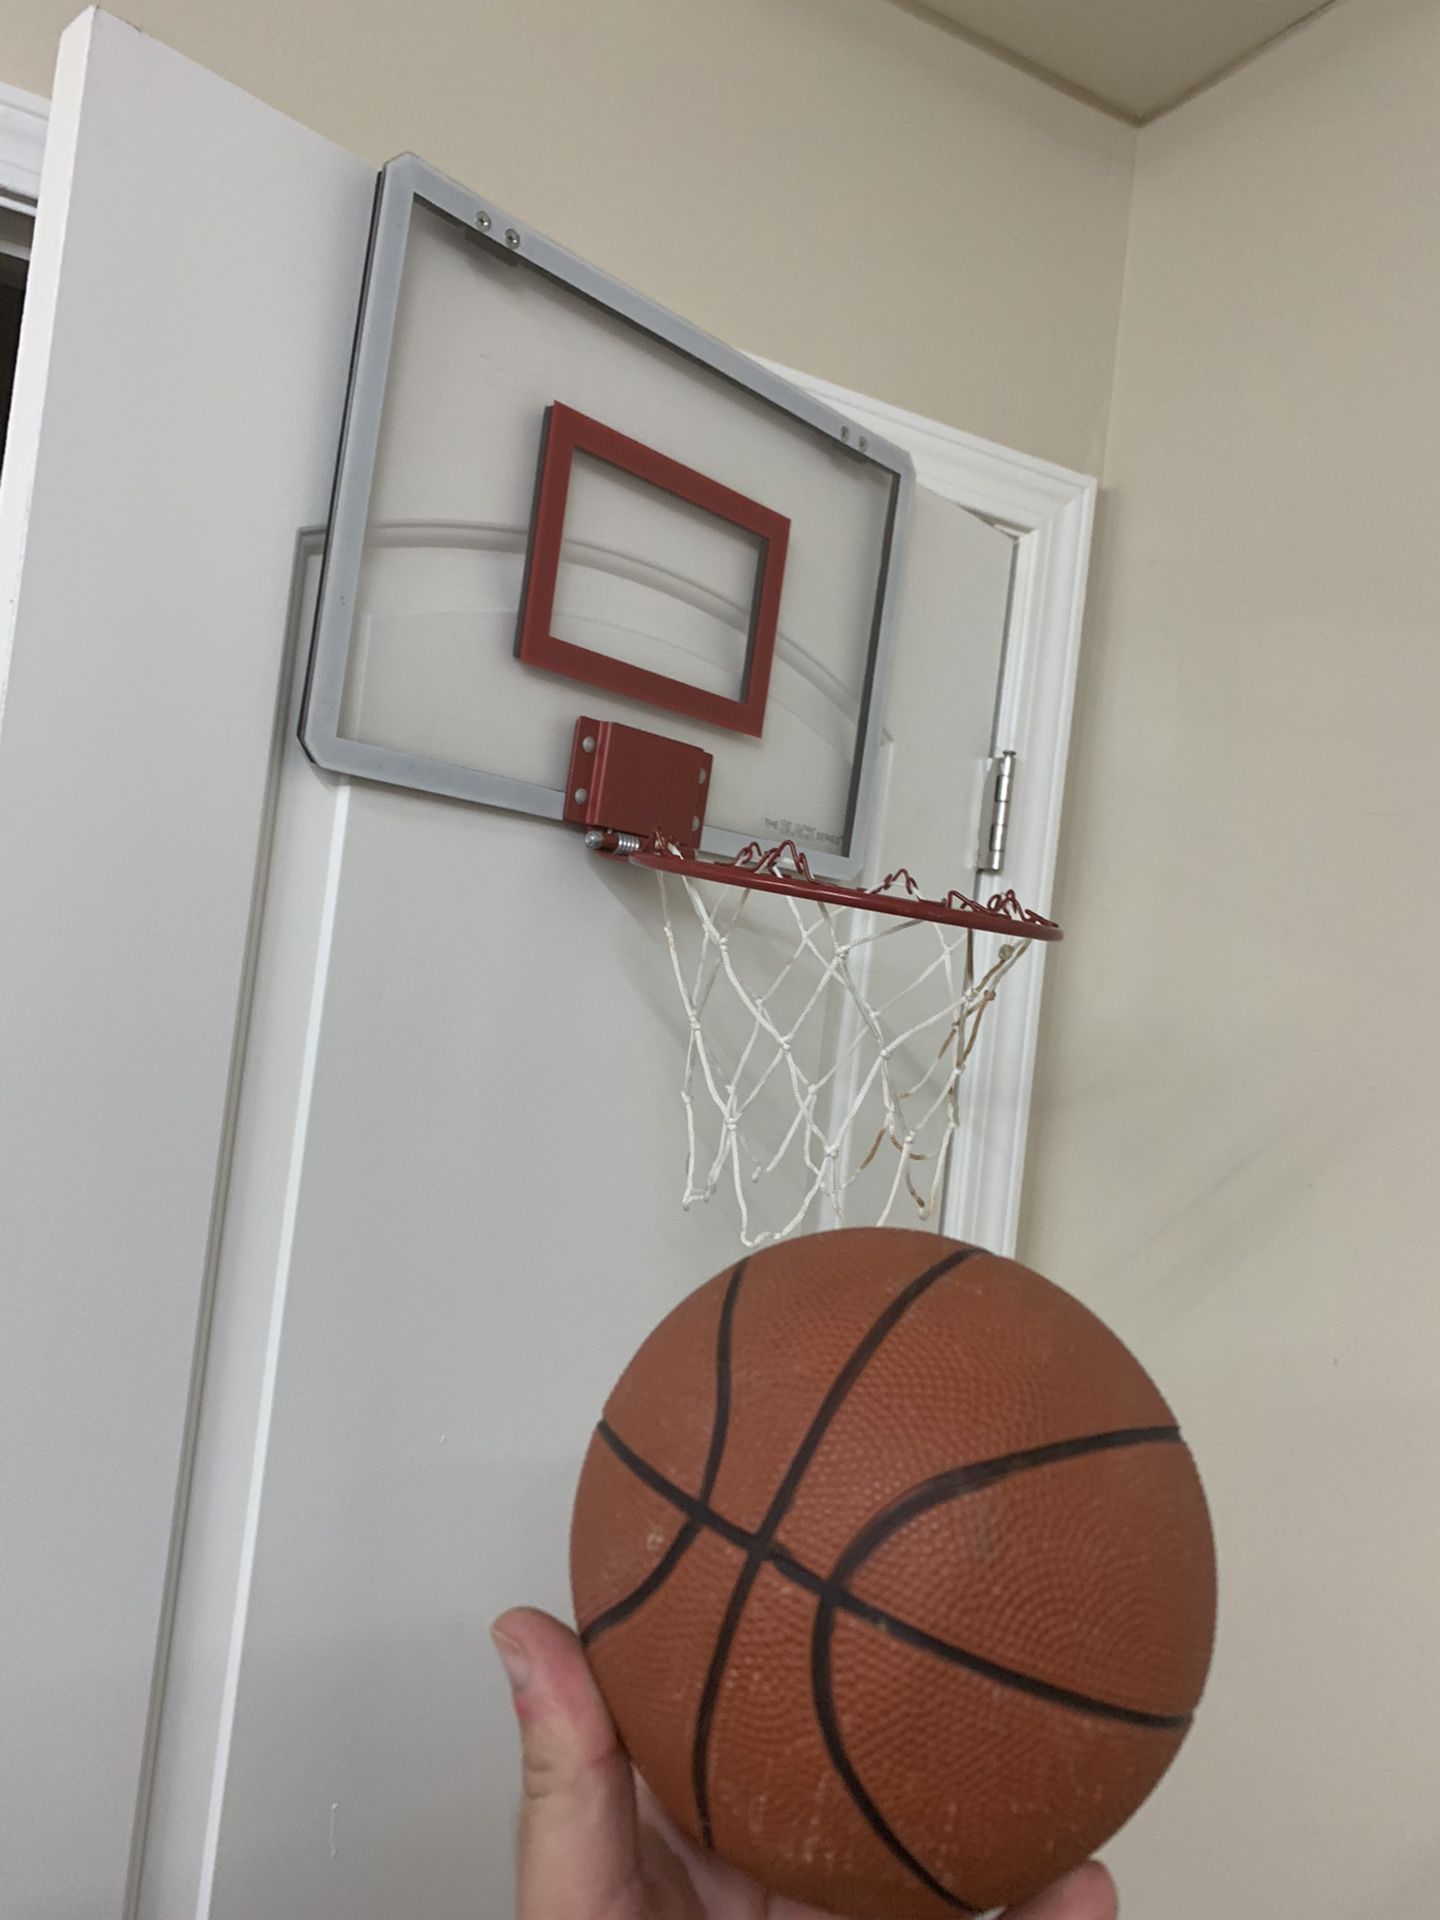 Door basketball hoop with ball